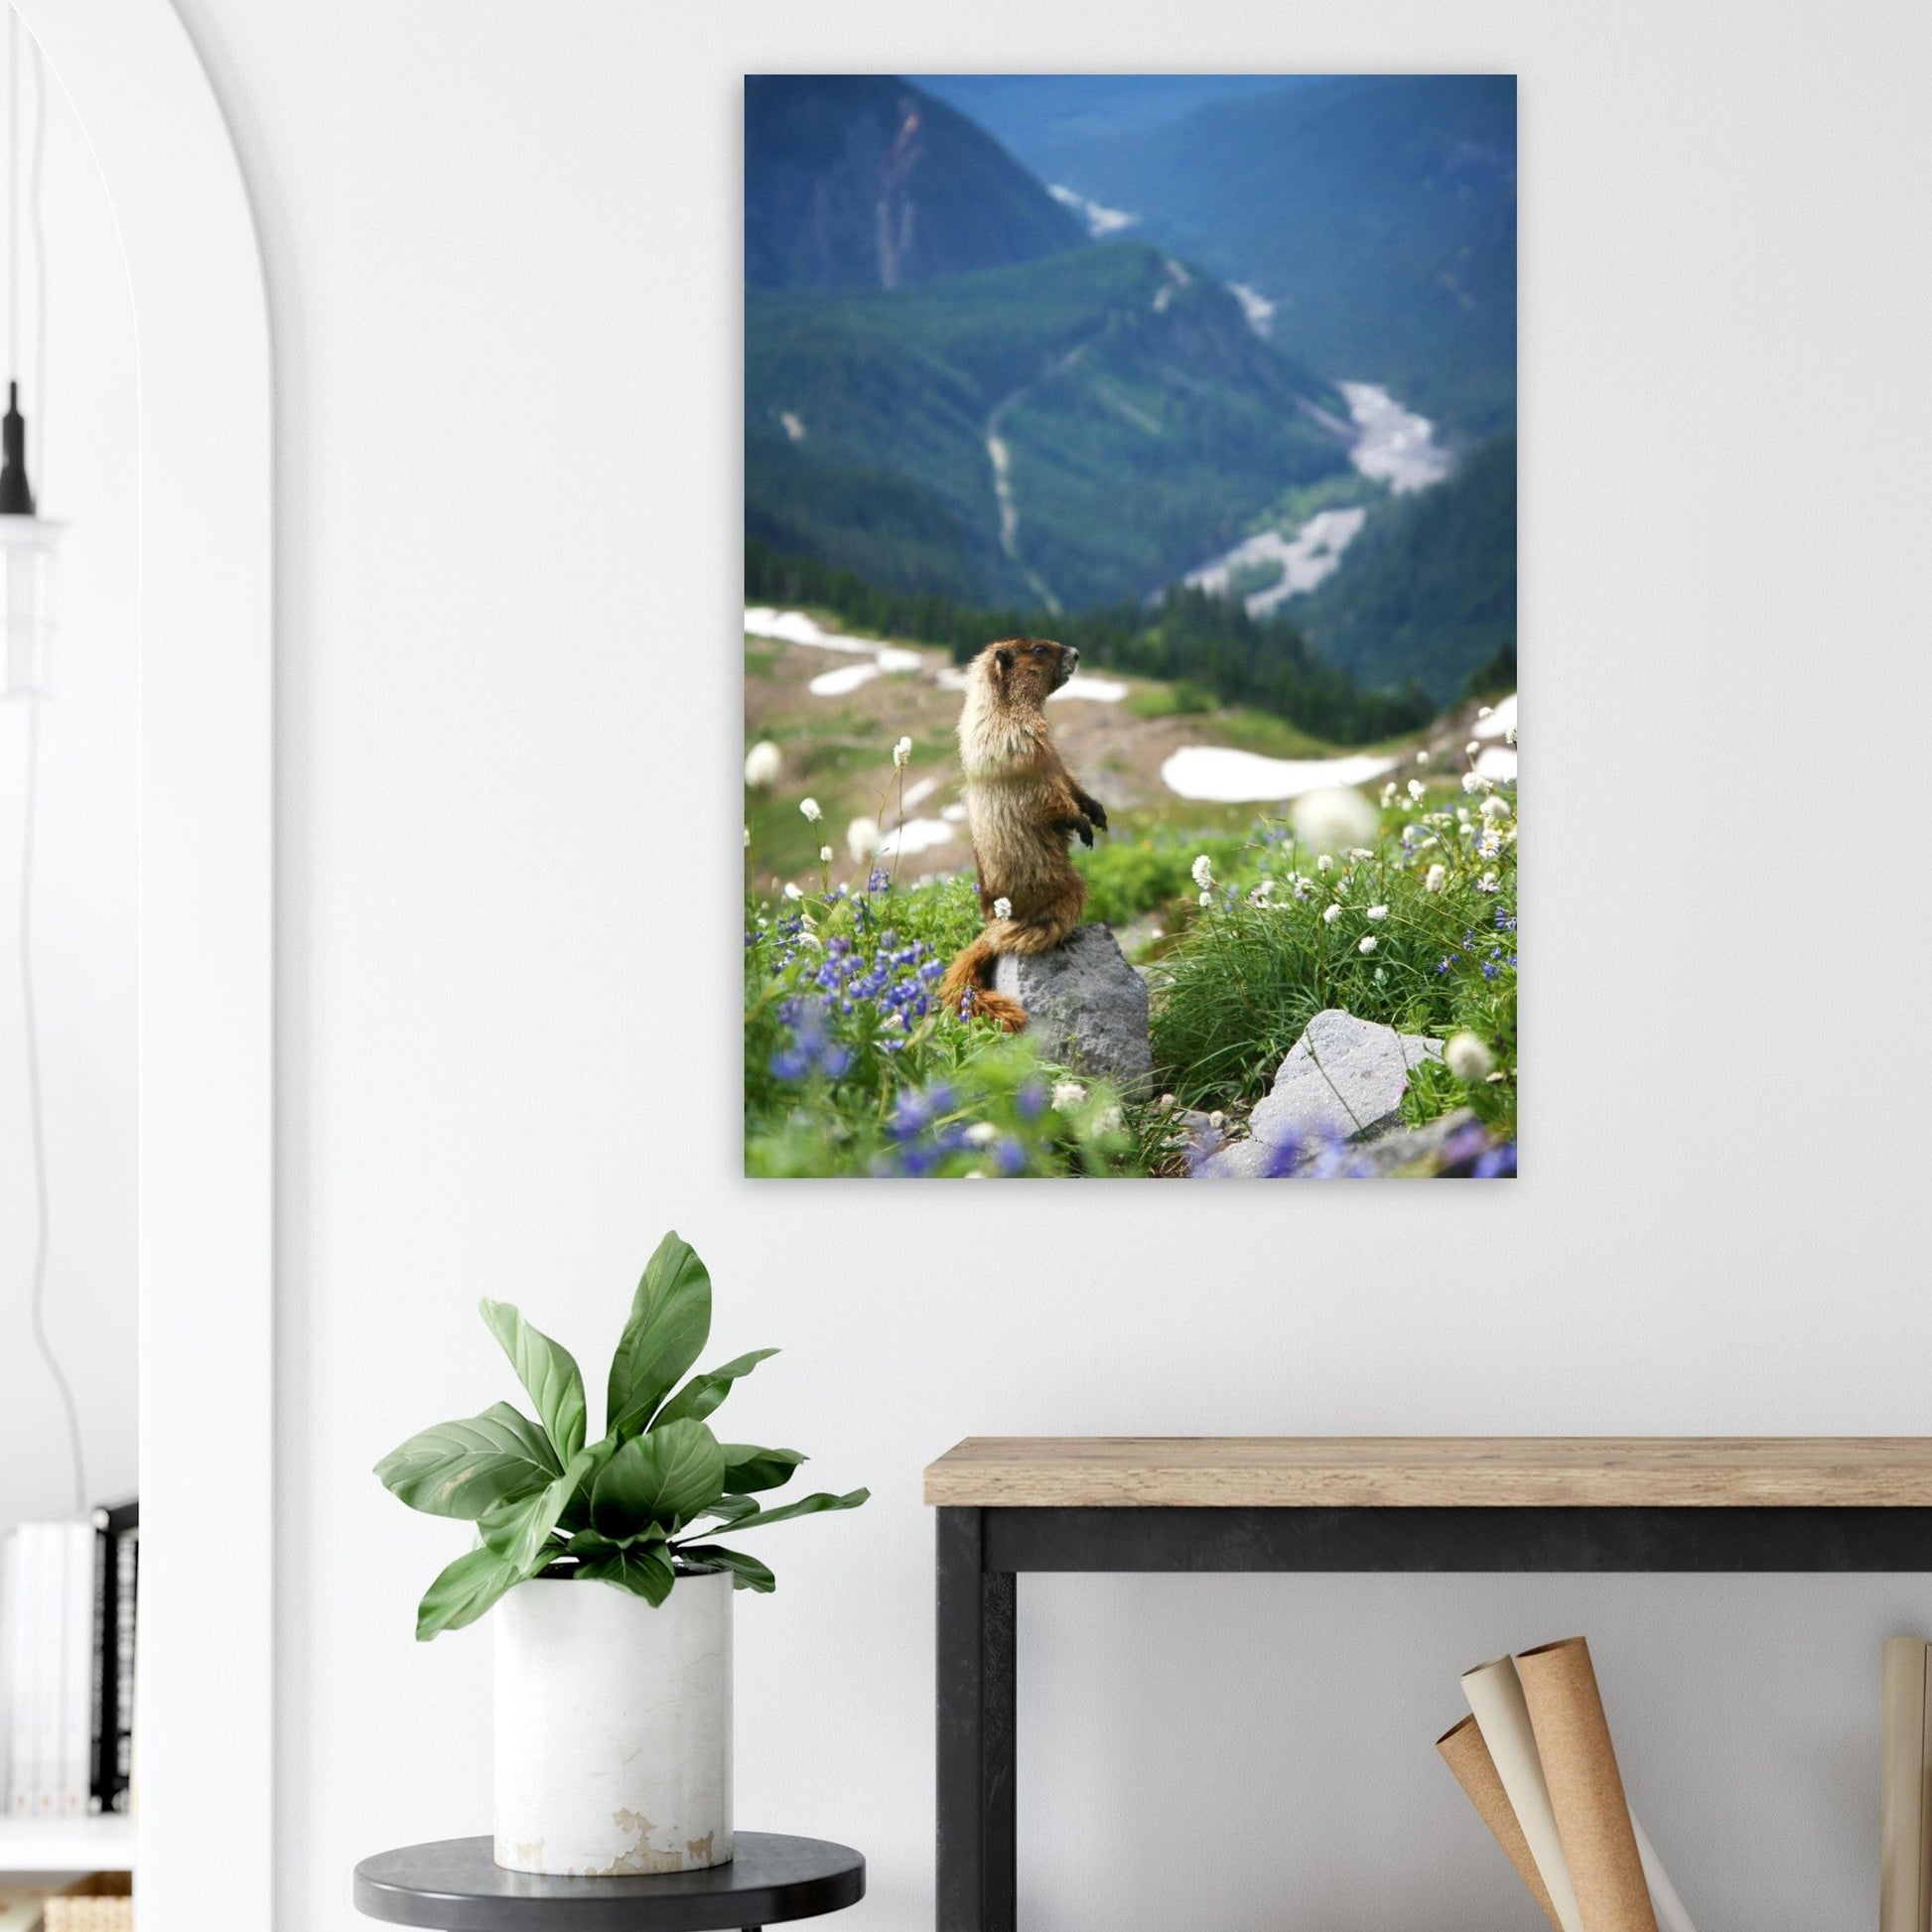 Vente Photo d'une marmotte dans les Alpes #8 - Tableau photo paysage